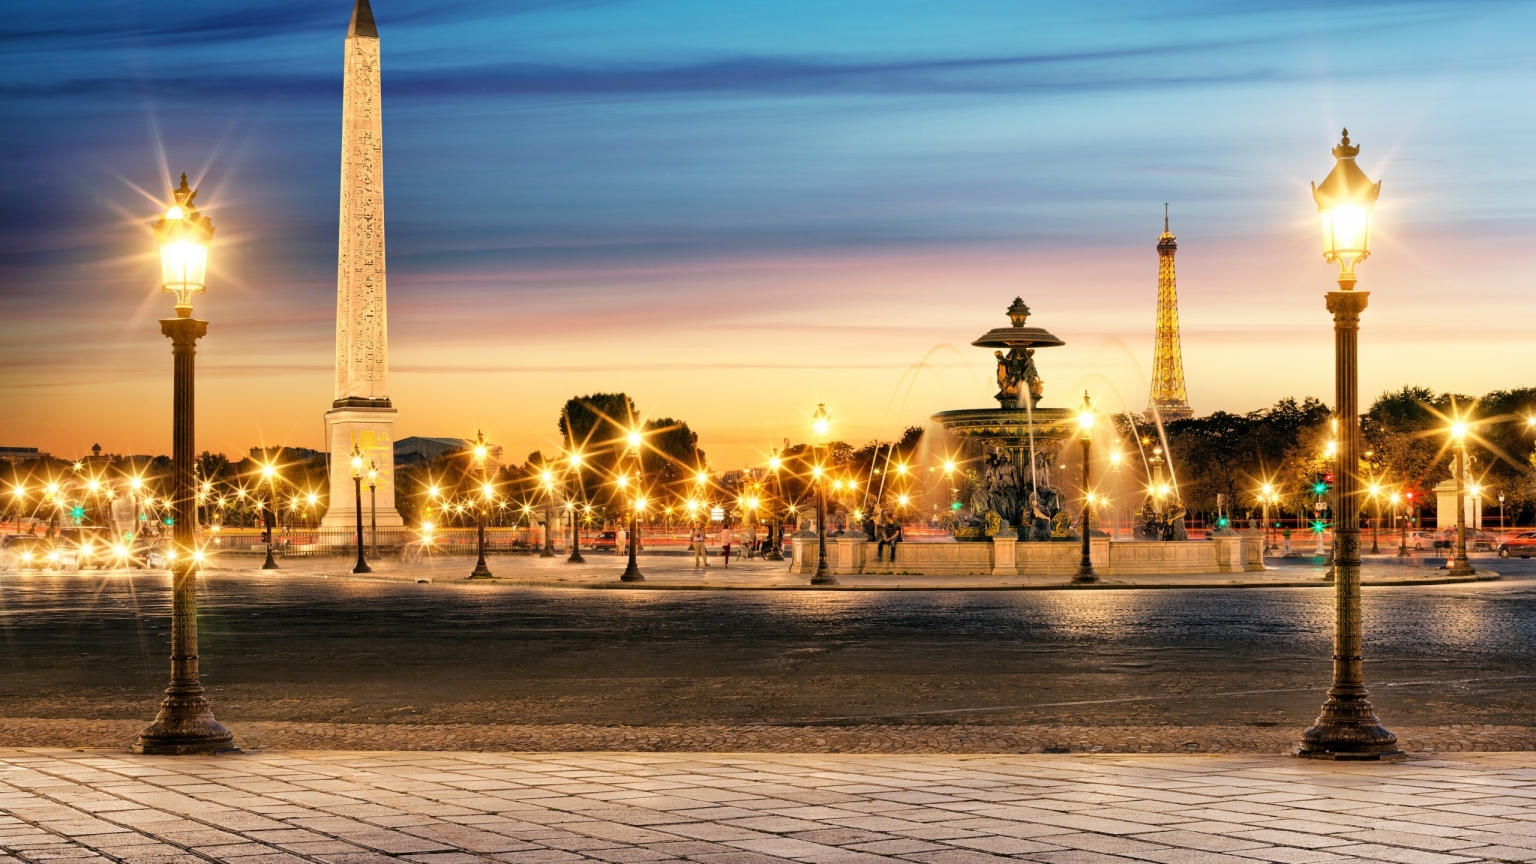 The Luxor Obelisk Paris for 1536 x 864 HDTV resolution